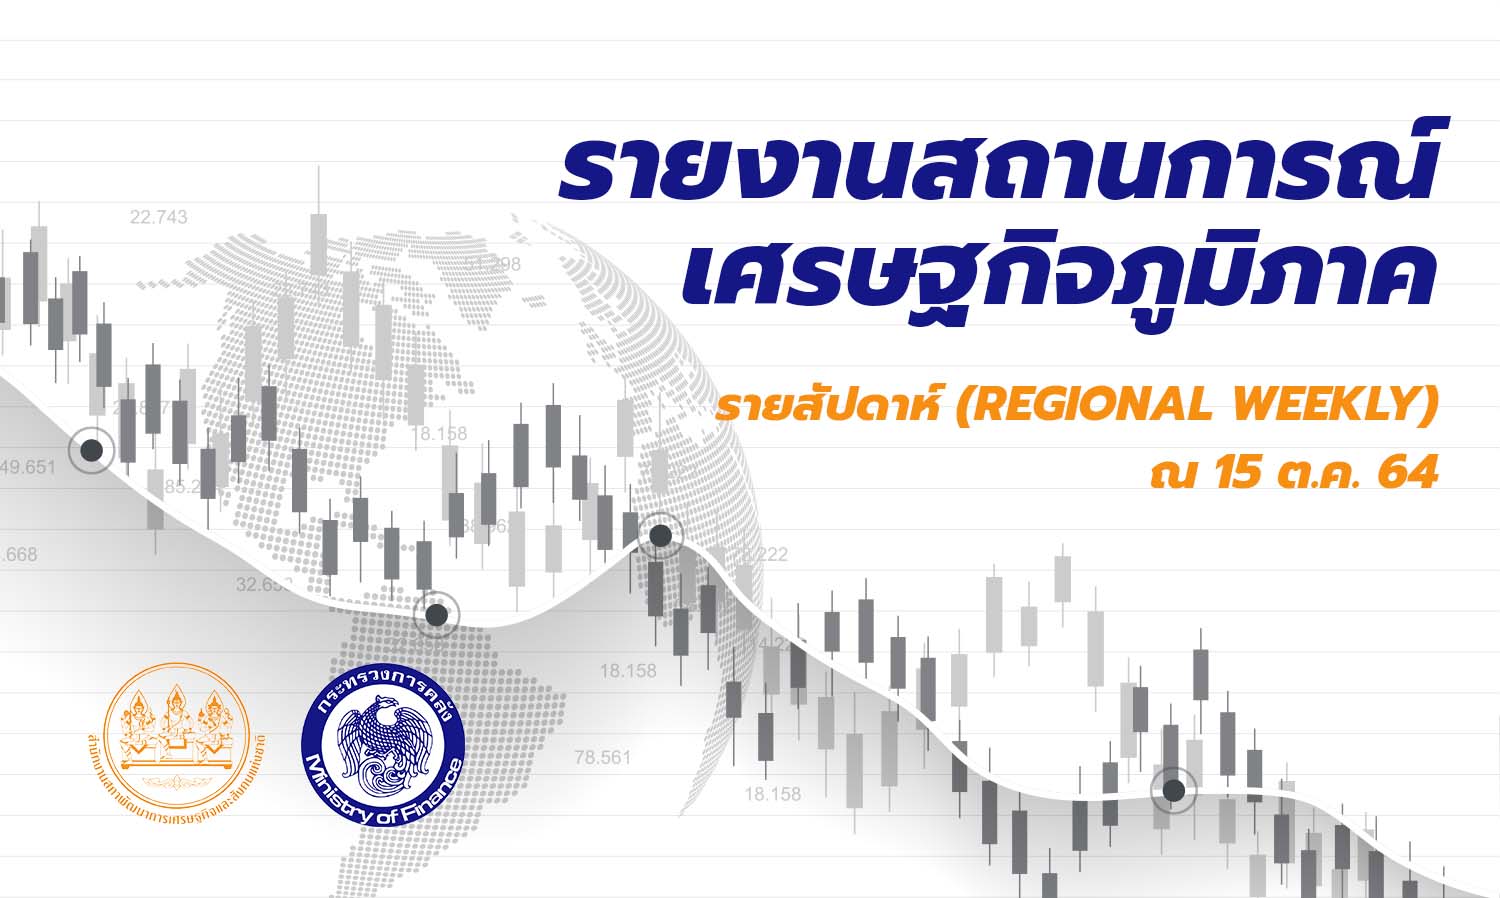 สำนักงานเศรษฐกิจการคลัง รายงานสถานการณ์เศรษฐกิจภูมิภาครายสัปดาห์ ณ 15 ต.ค. 64 